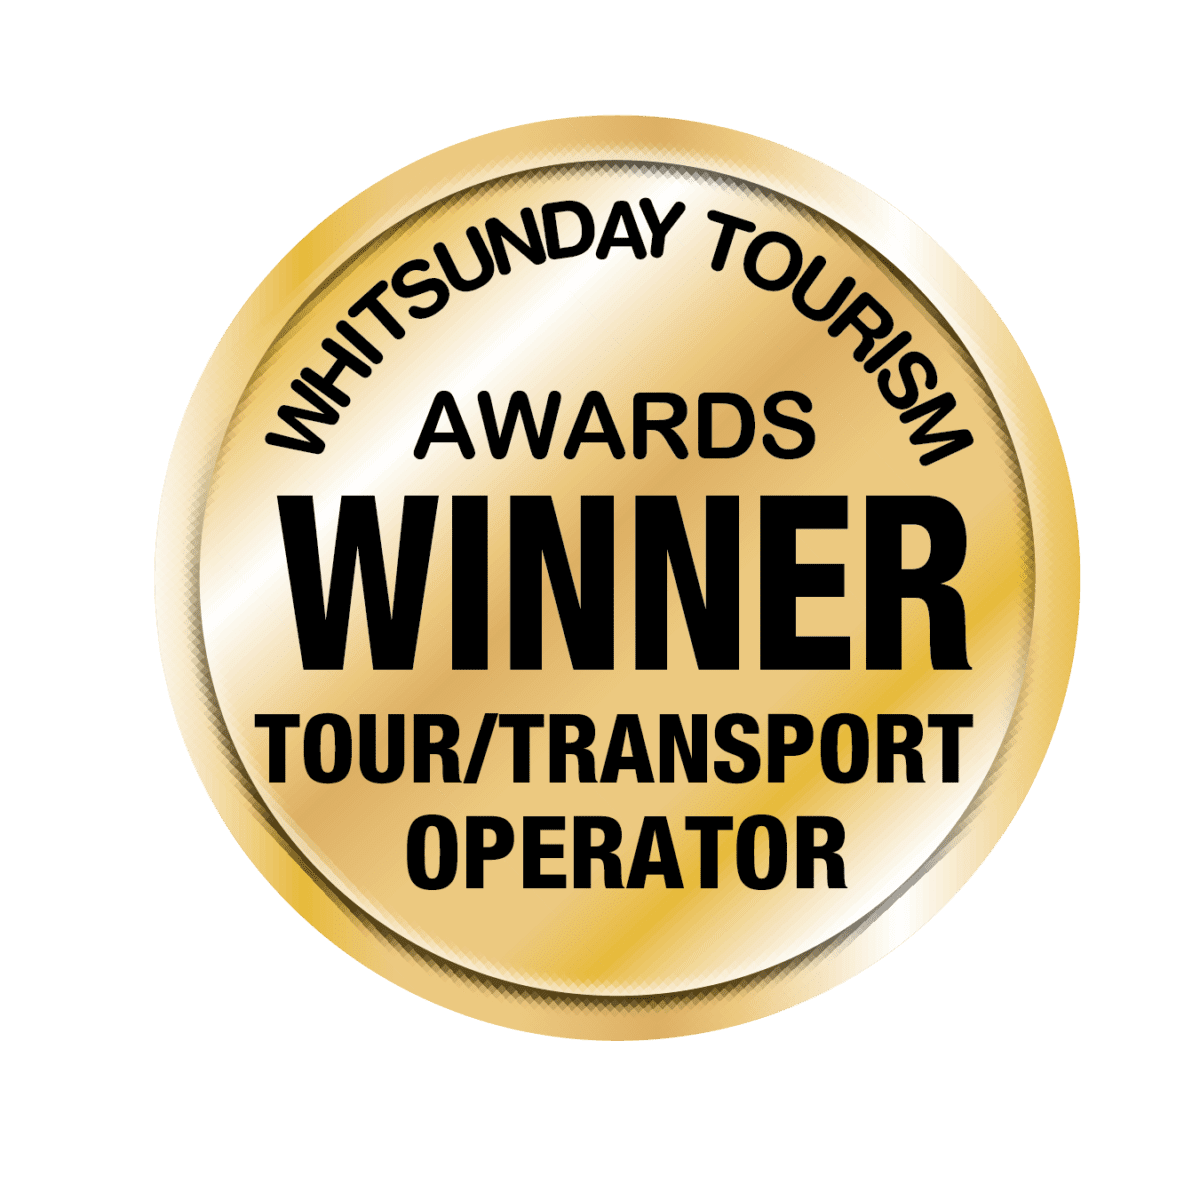 No Date Tour Transport Award